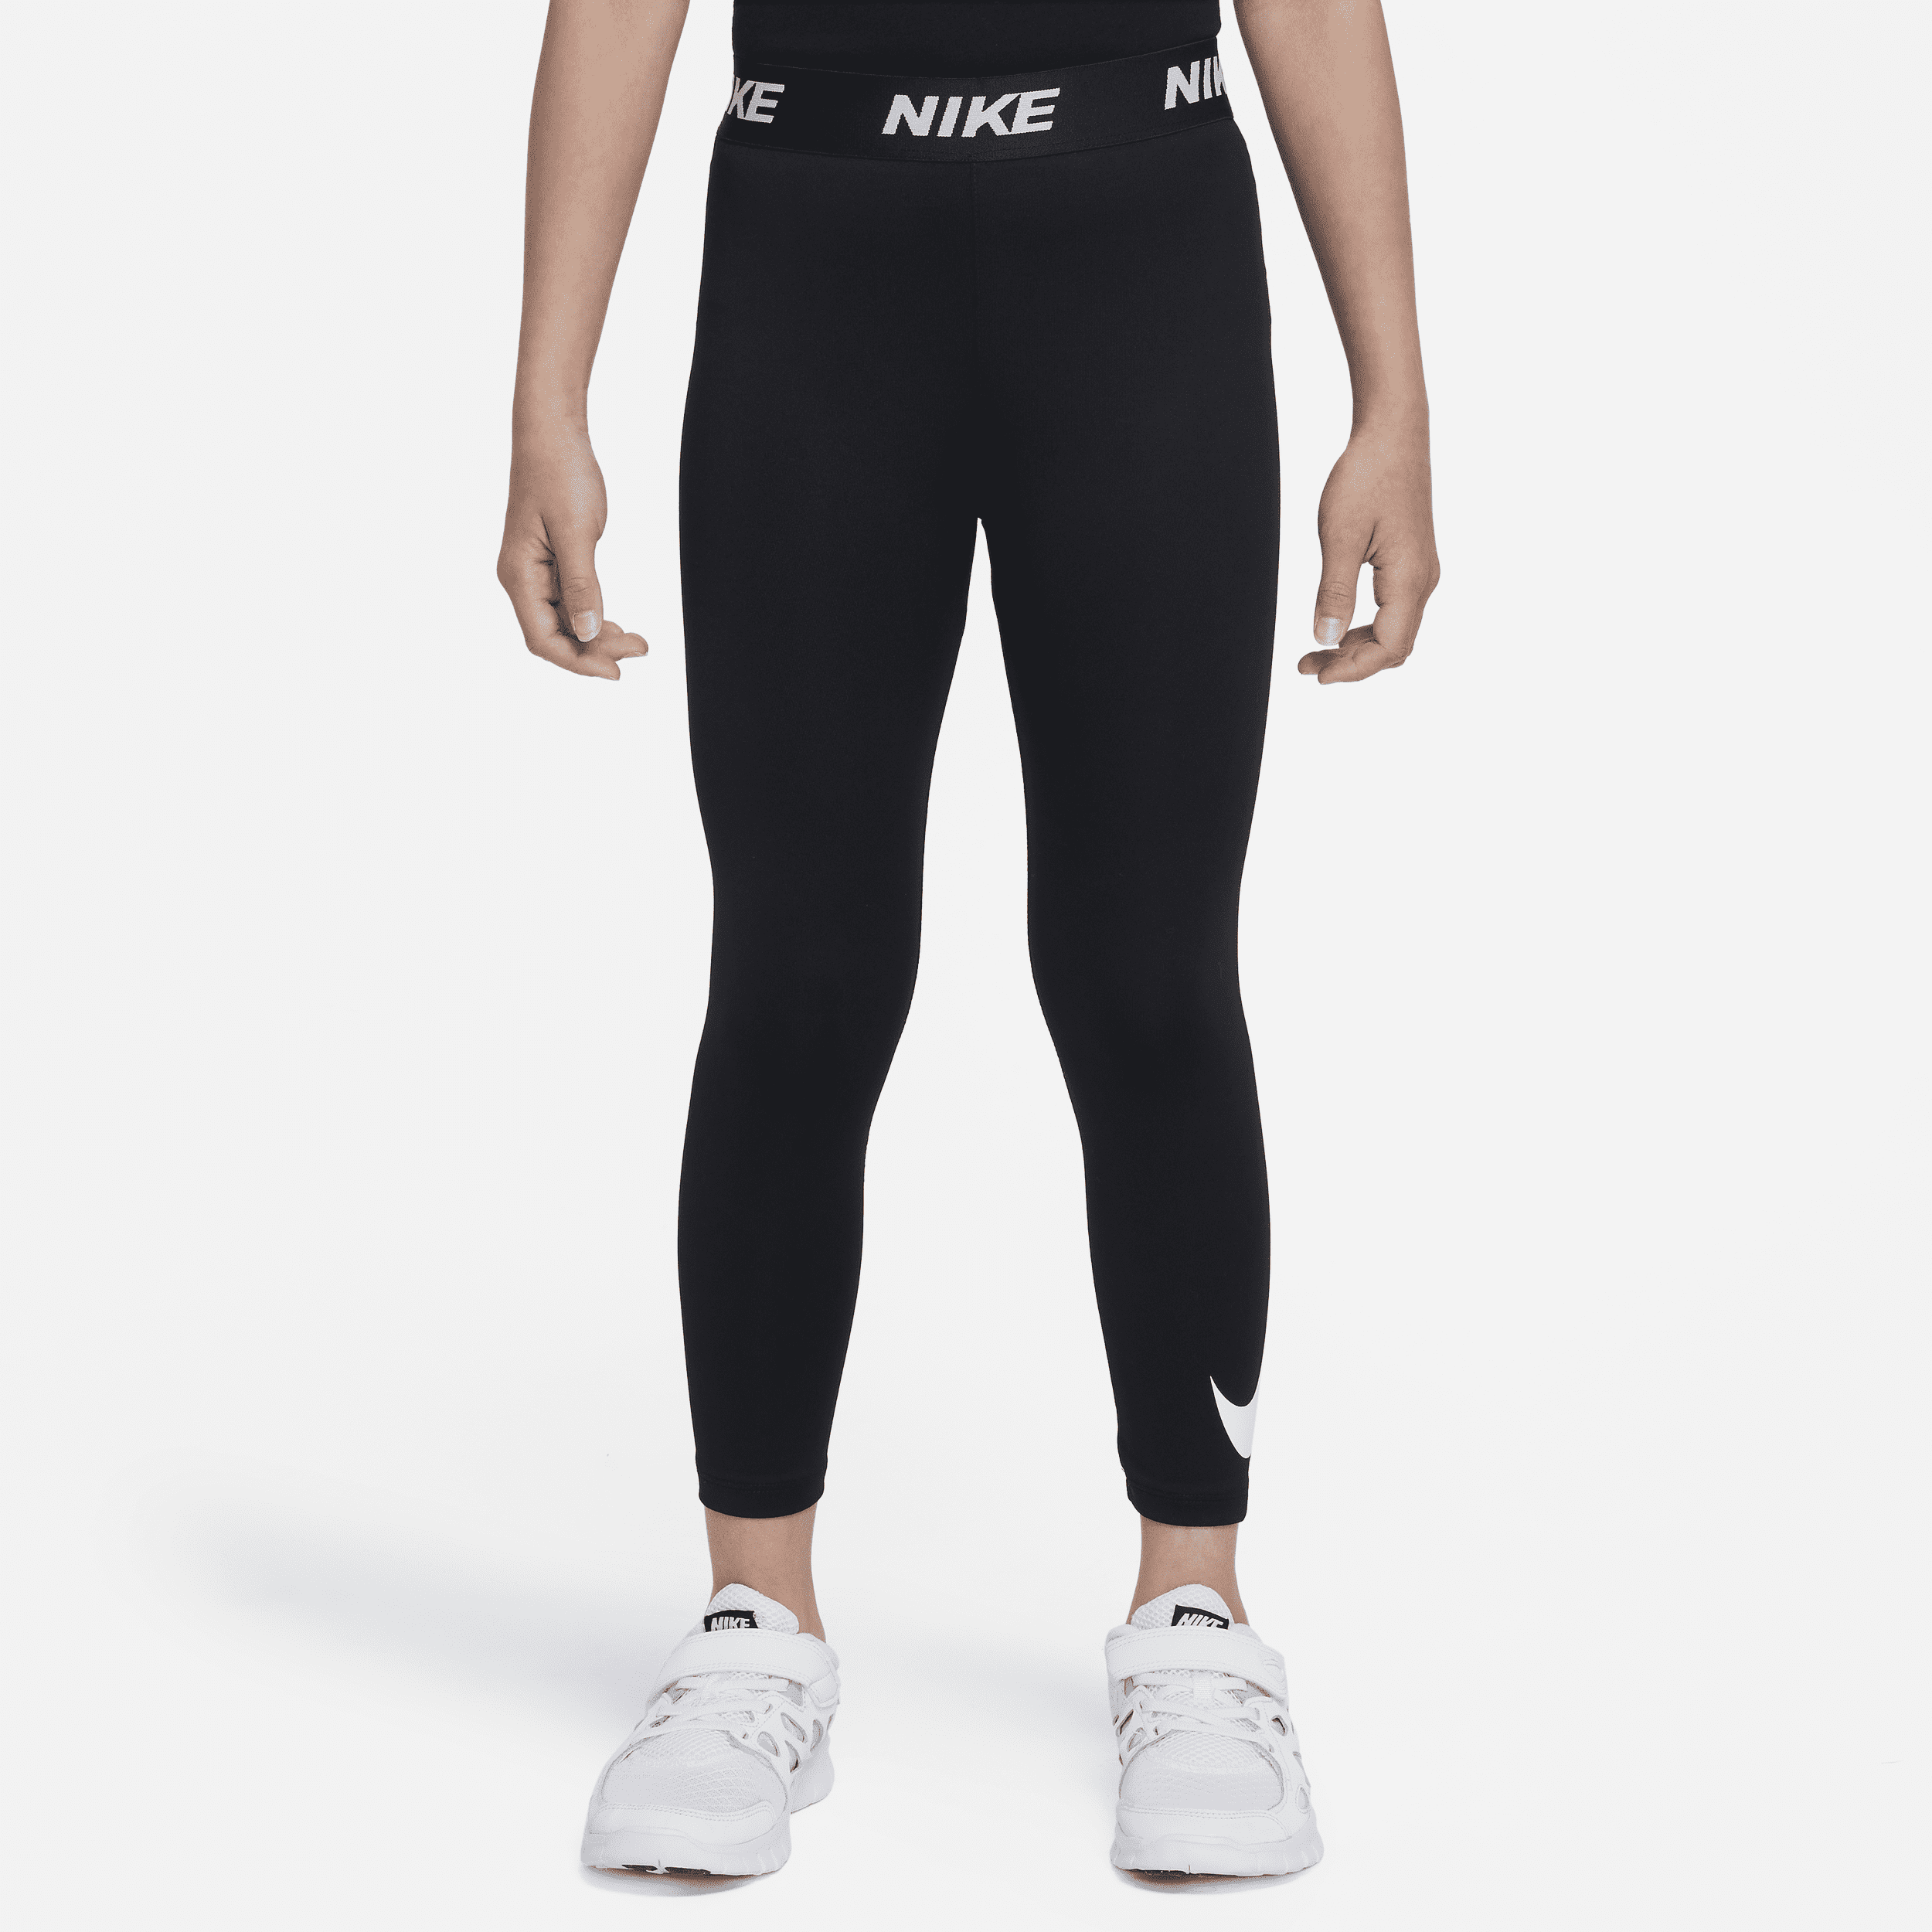 Leggings Essentials Dri-FIT con Swoosh Nike – Bambino/a - Nero